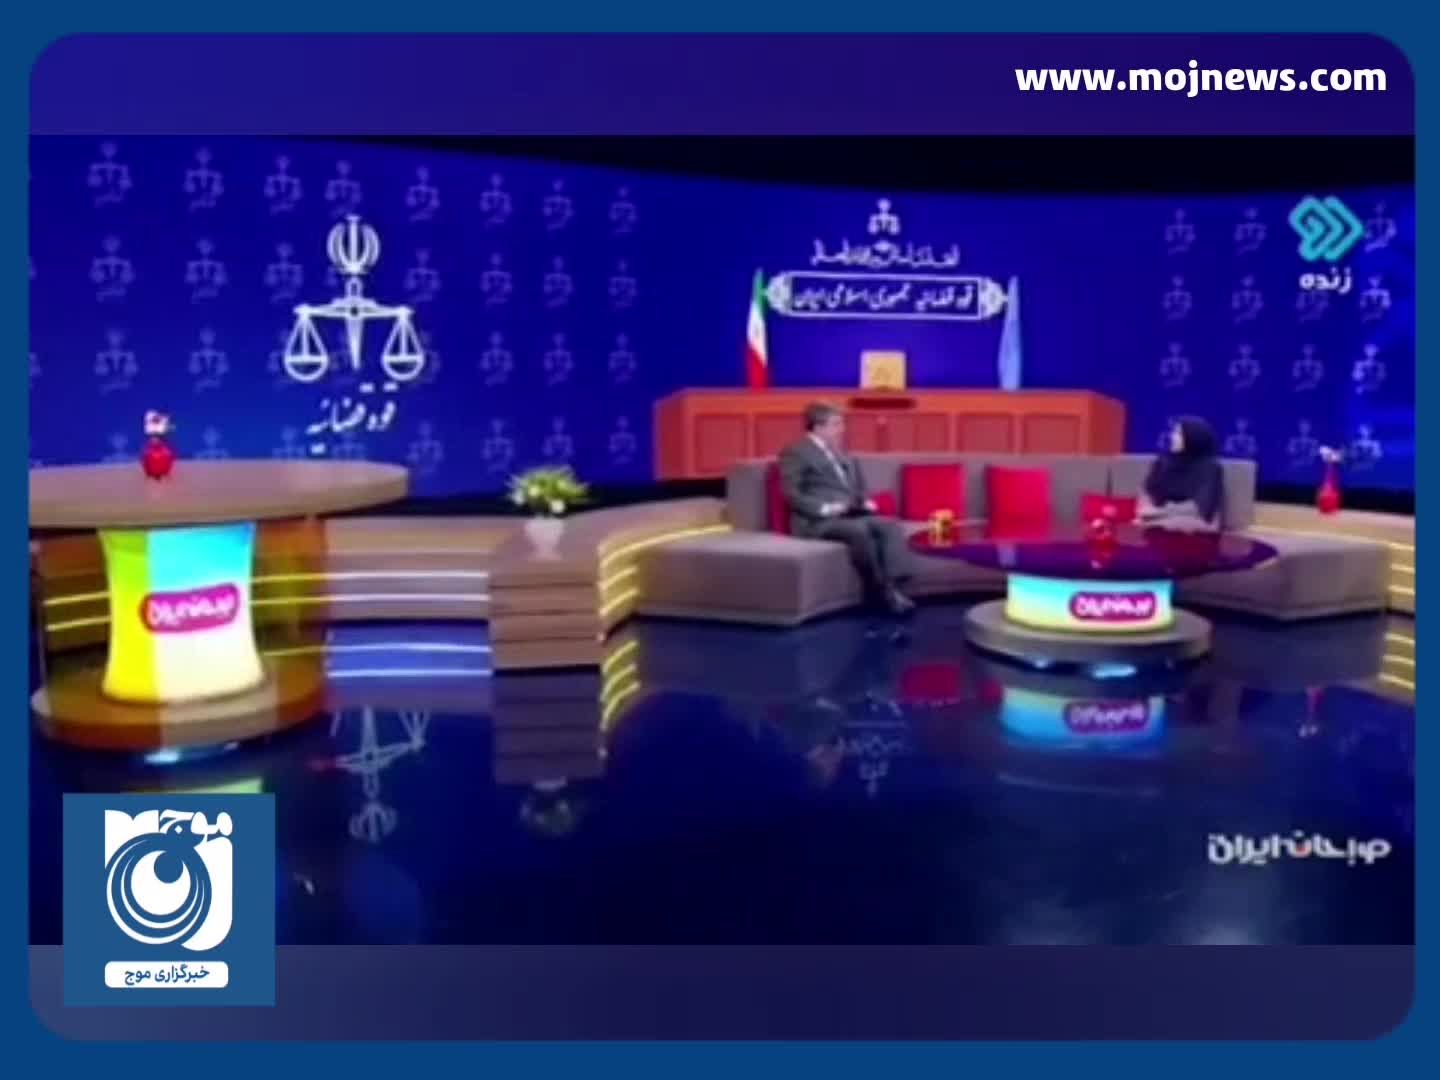 نخستین توضیحات رسمی قوه قضائیه درباره محکومیت مهدی هاشمی + فیلم